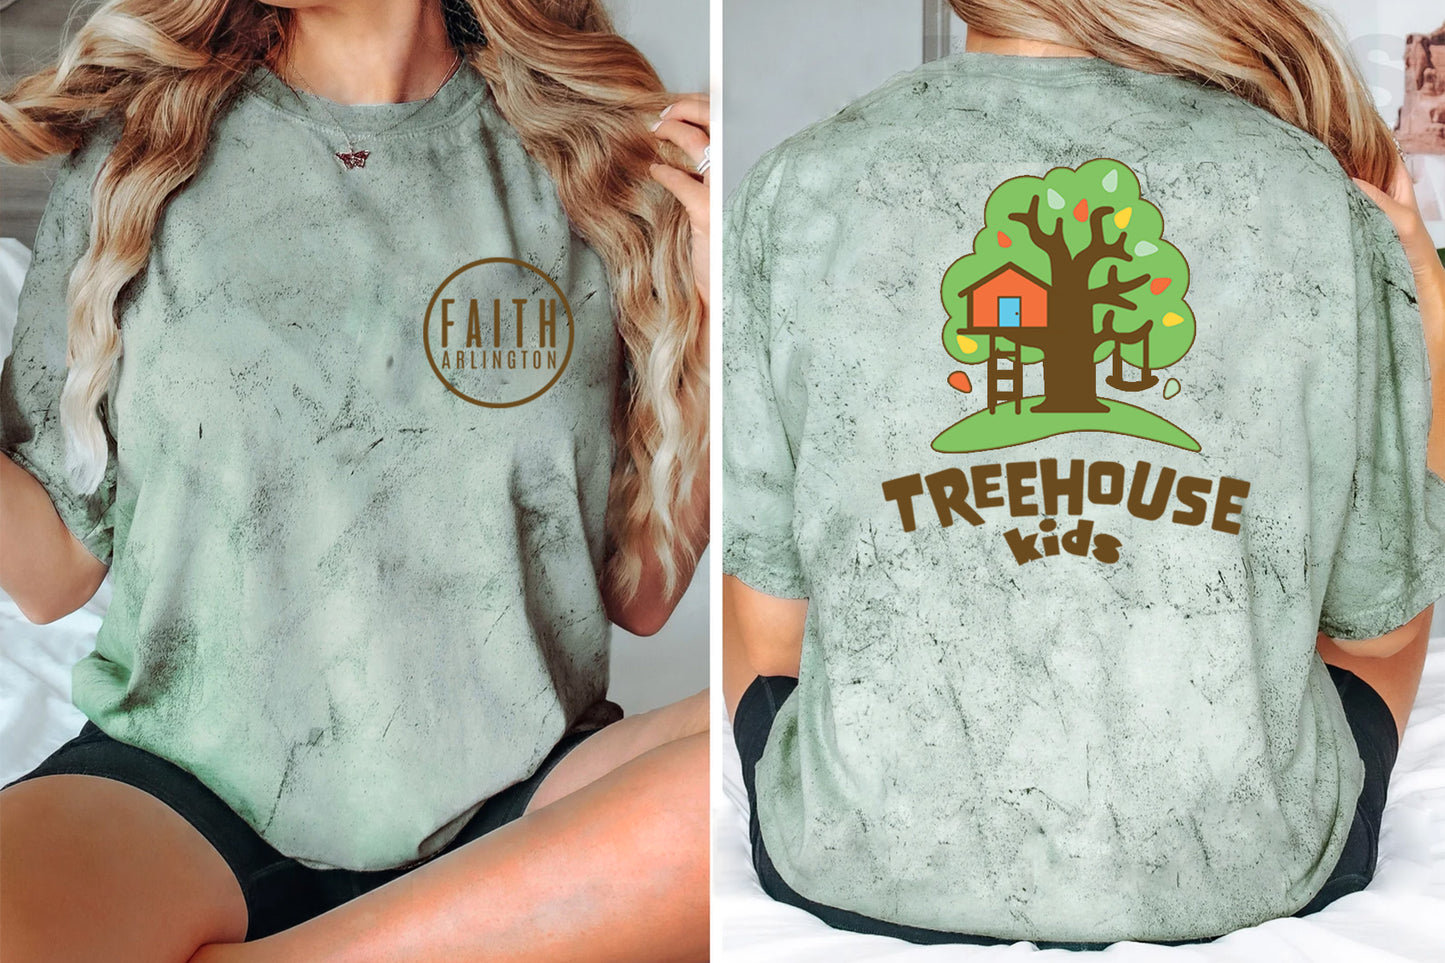 Faith Arlington Treehouse Kids Shirt (Adult Sizes)